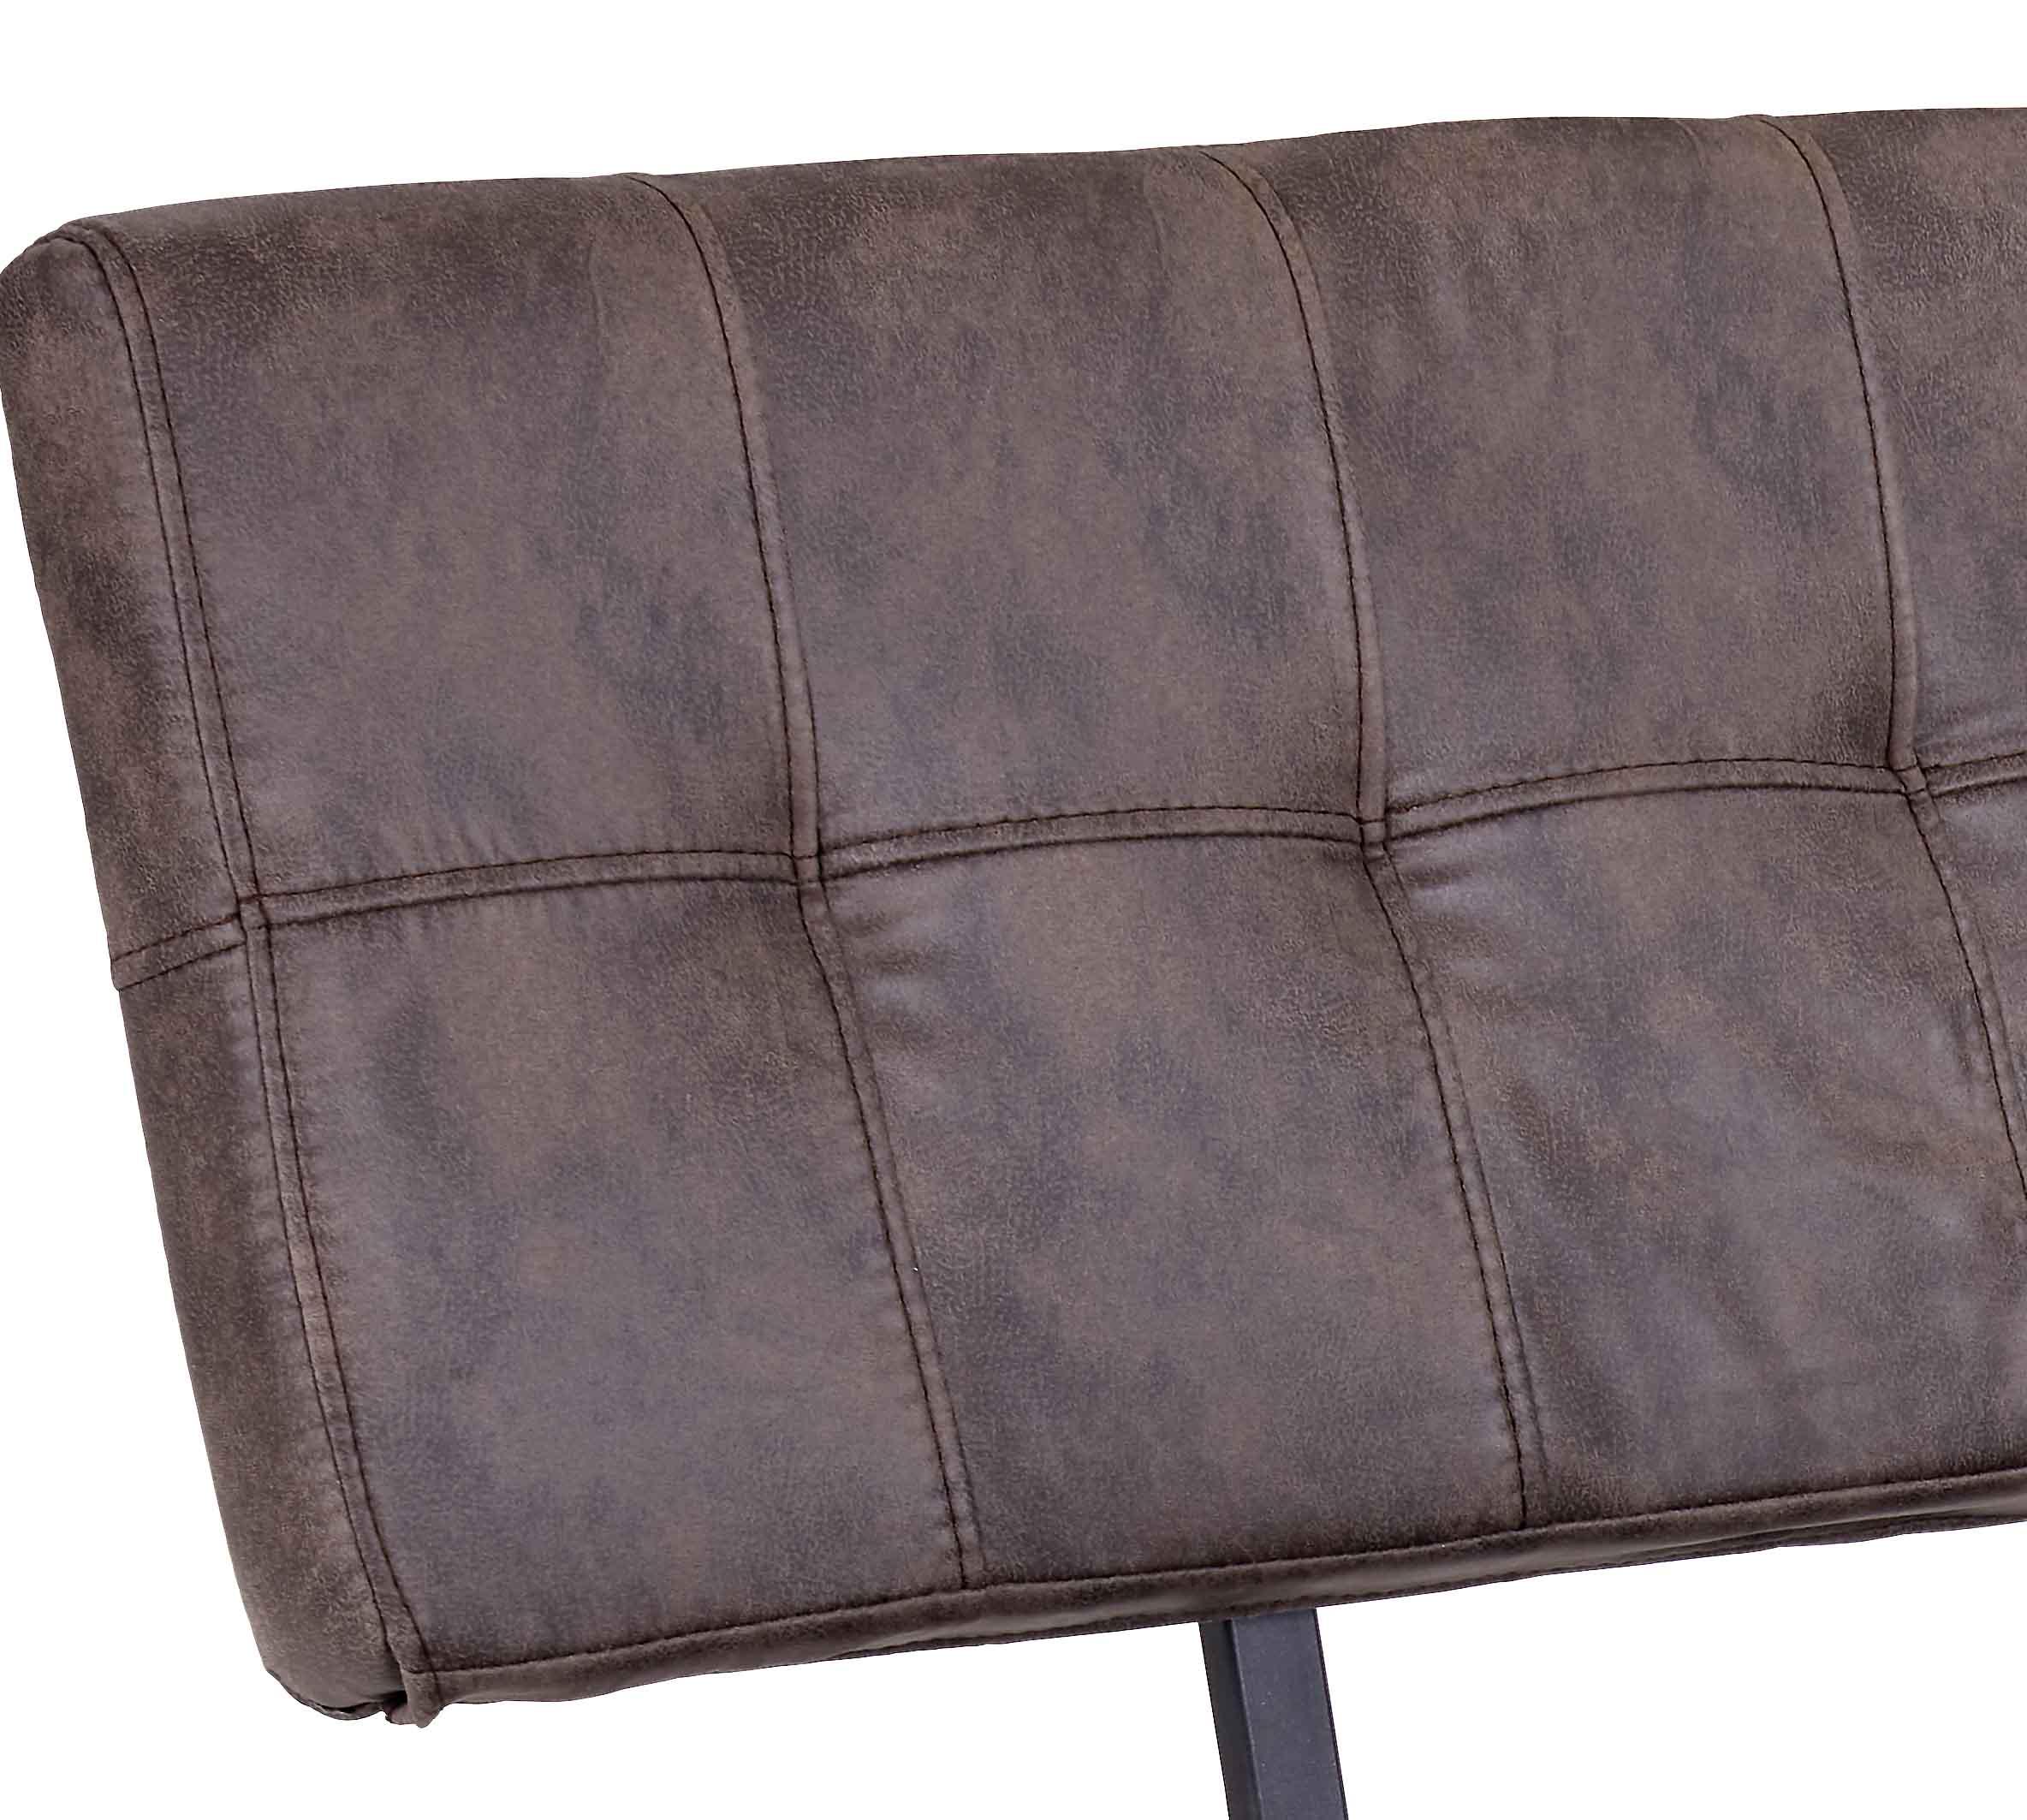 Sitzbank mit Lehne Vintage Braun Lederlook Donna B: 140cm - Anthrazit/Braun, MODERN, Textil/Metall (140/93/61cm)